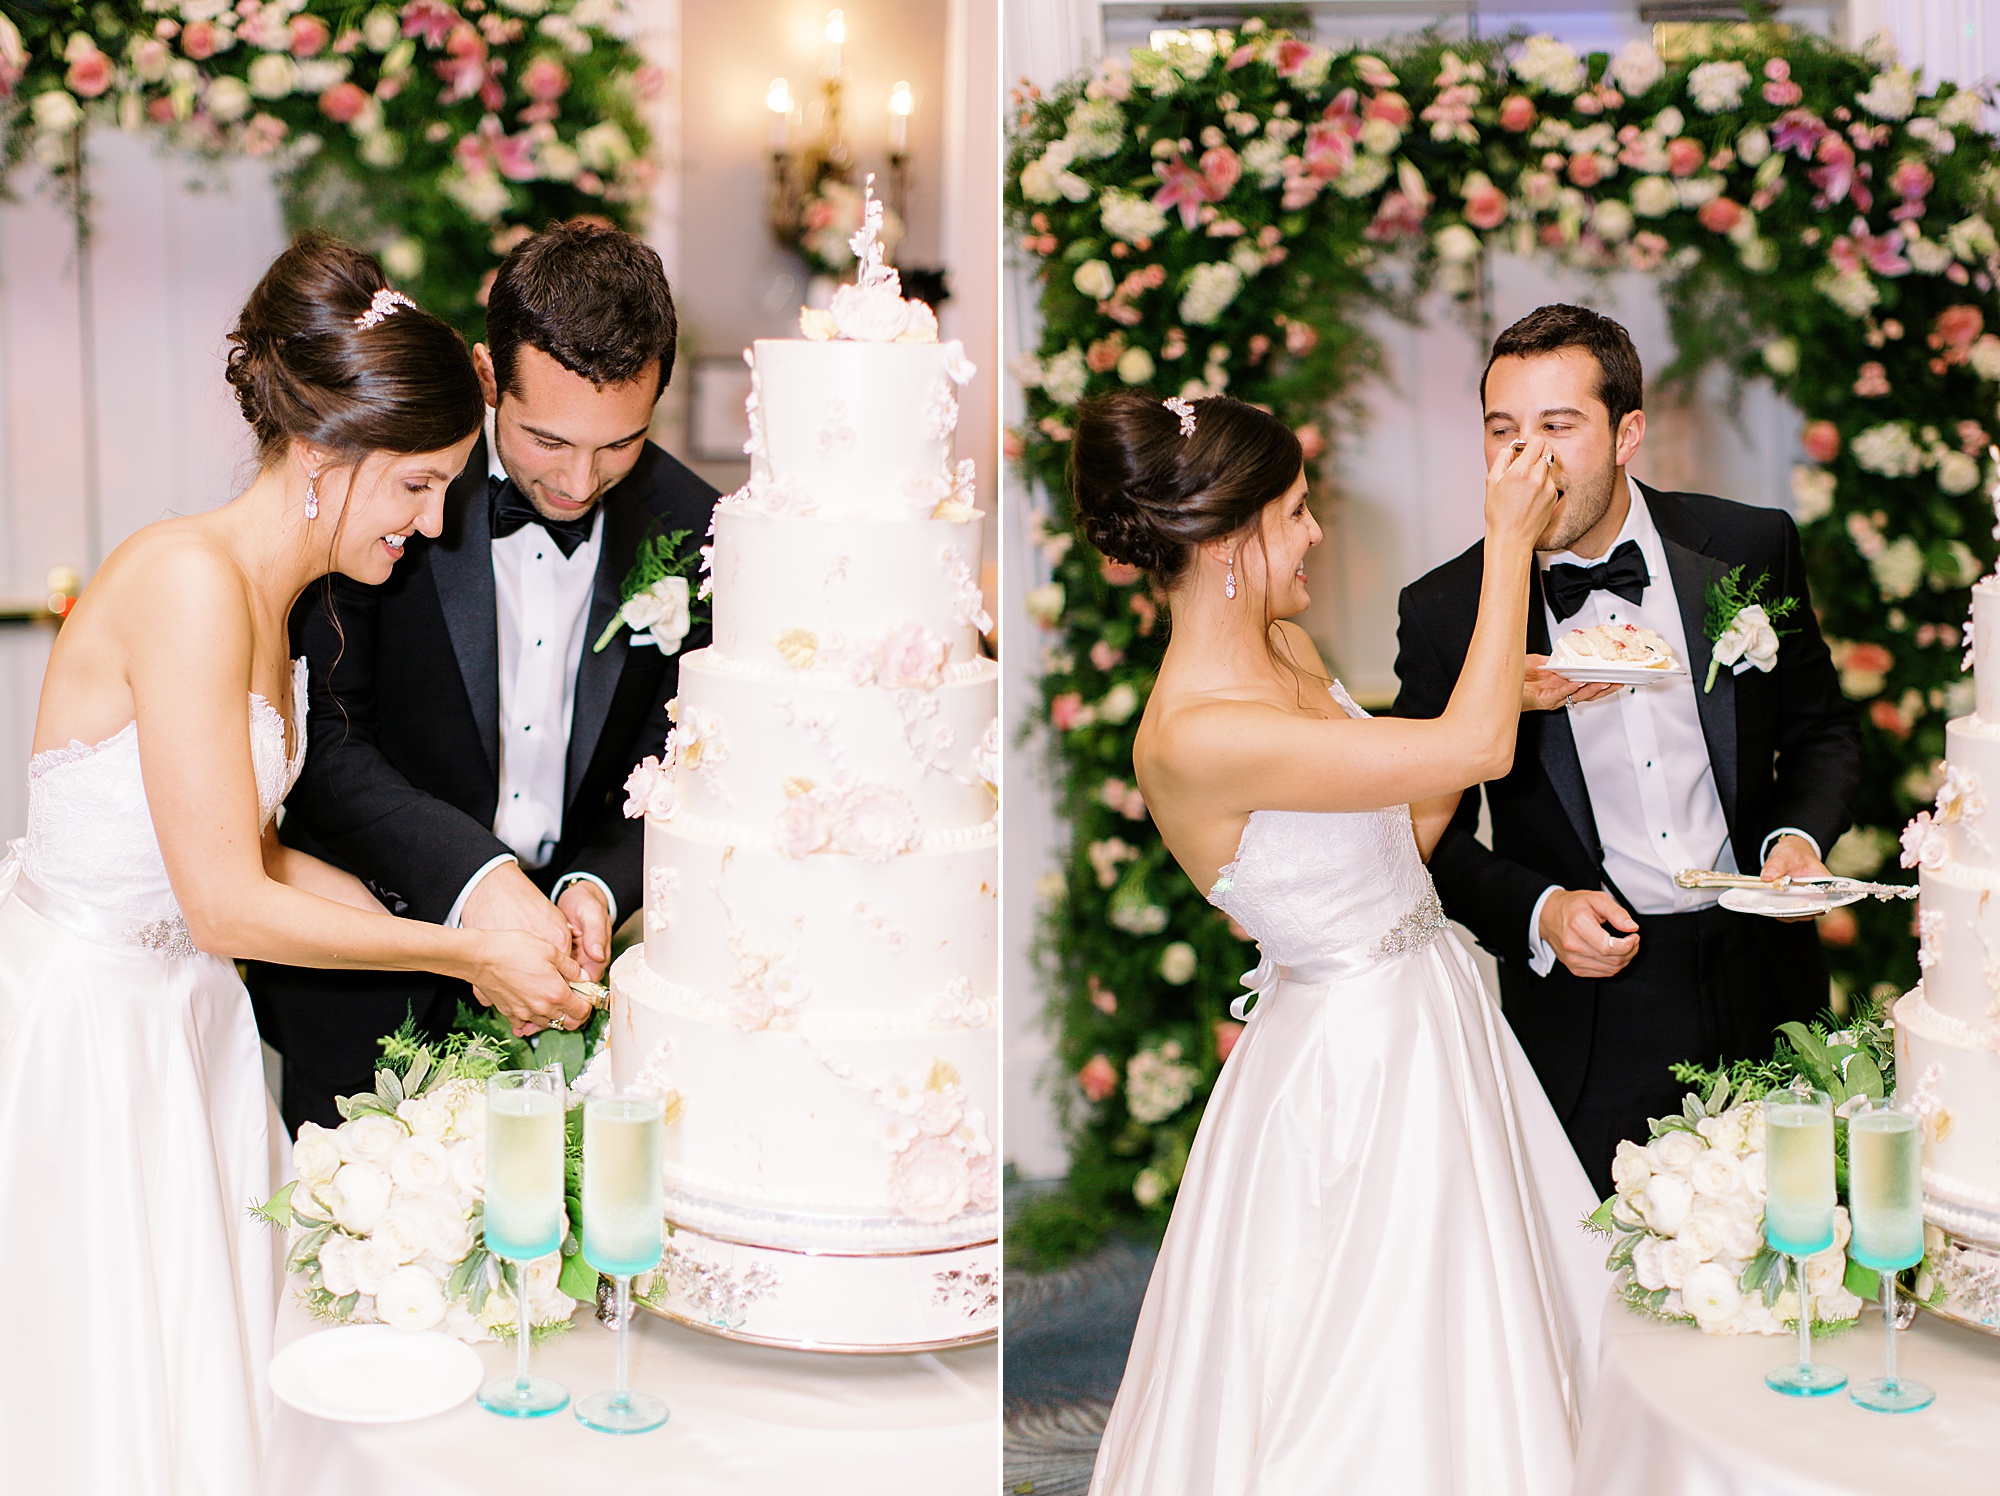 newlyweds cut wedding wedding cake during NC wedding reception